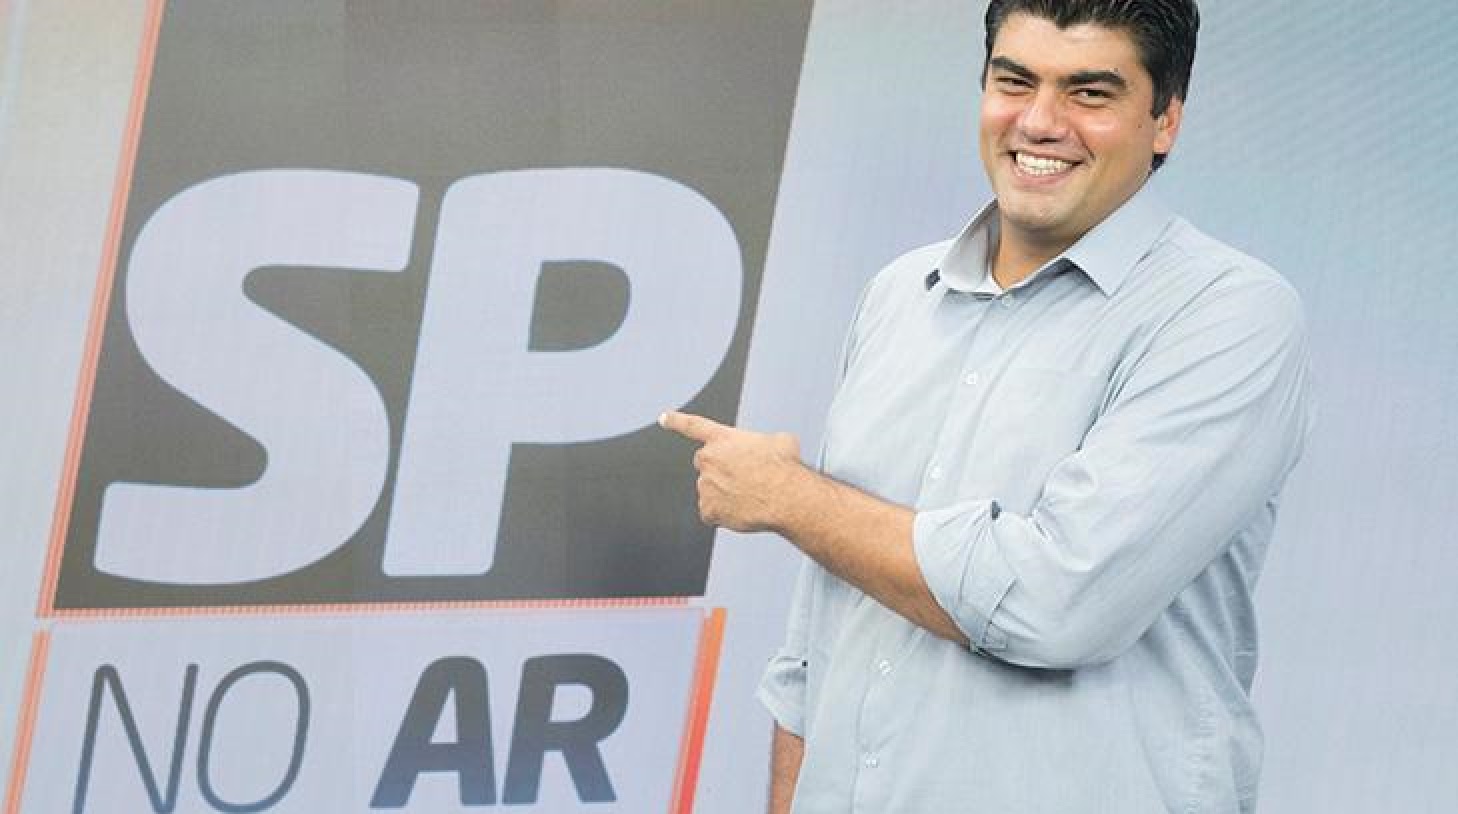 André Azeredo comandou o SP No Ar (Divulgação / Record TV)